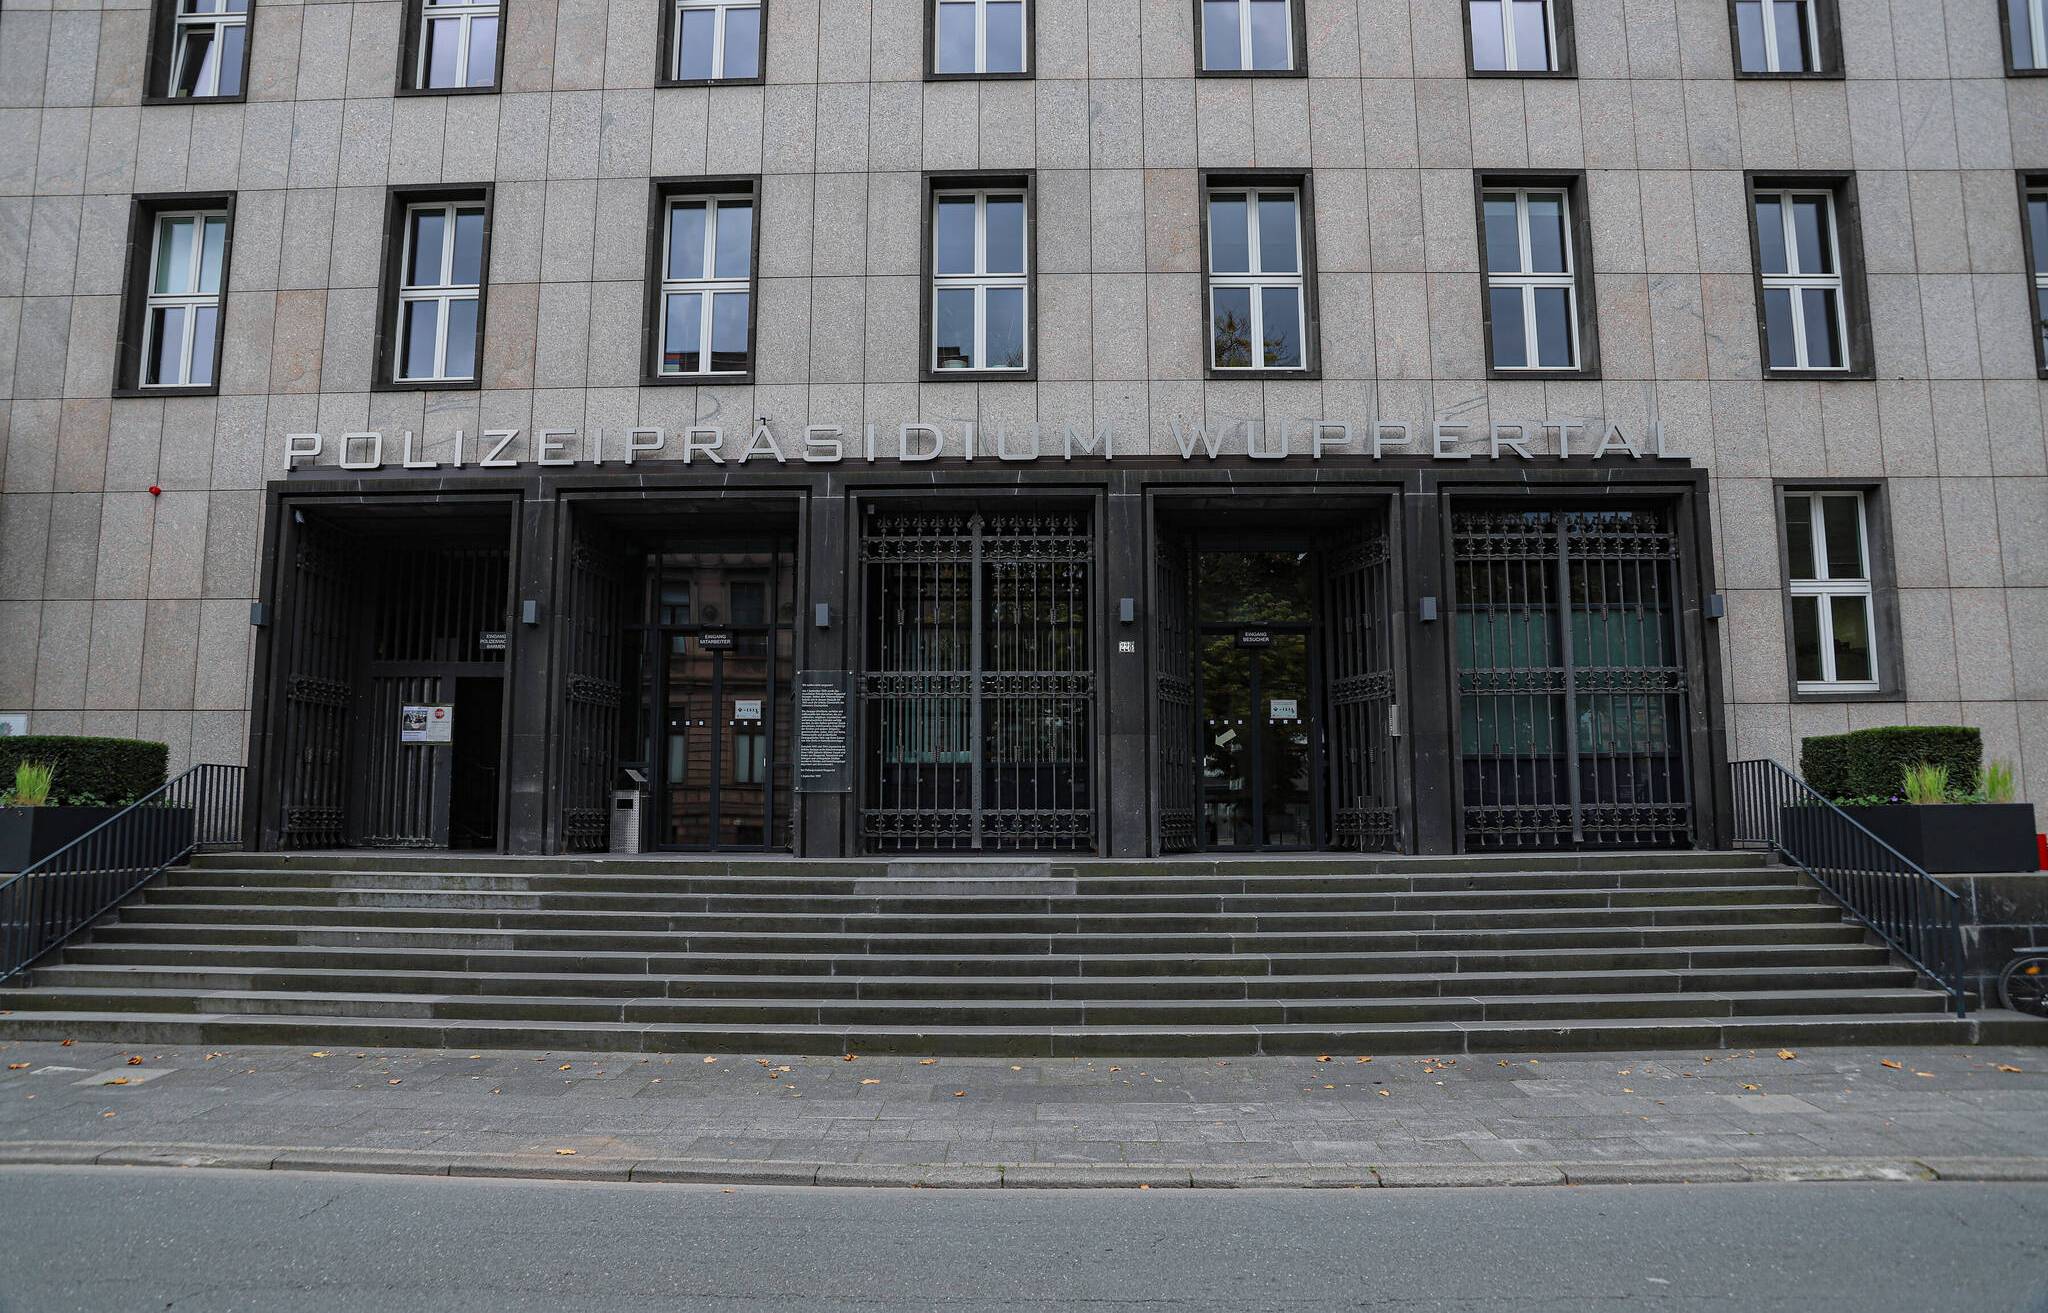  Das Wuppertaler Polizeipräsidium warnt vor Trickbetrügerinnen und -betrügern, 